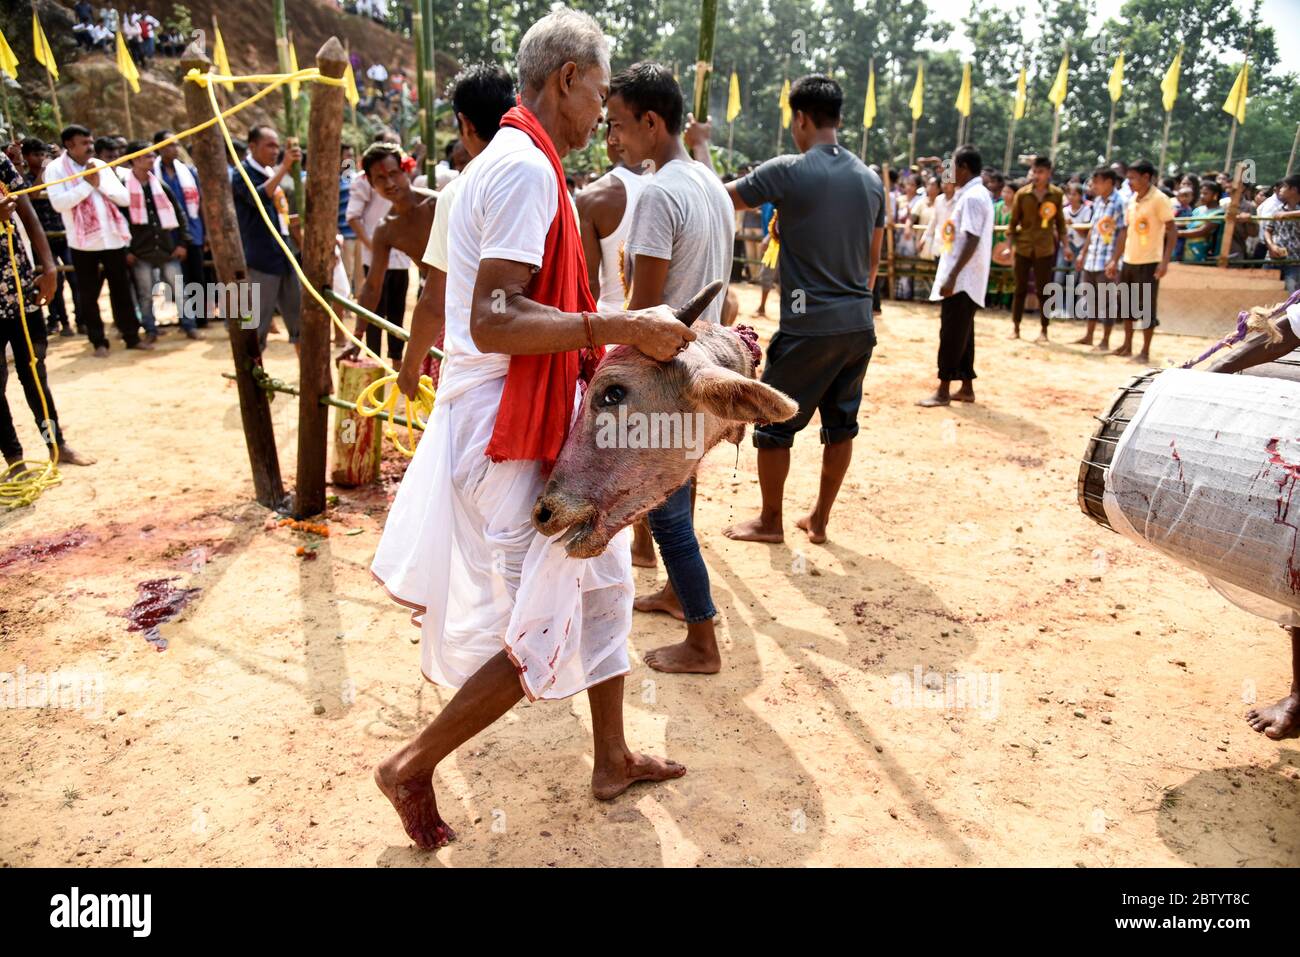 INDIEN: Ein enthaupteten Kopf wird von der Arena weggetragen. GRAUSAME Fotos zeigen rücksichtslose Menschenmengen, die um Blut buhlten, während Büffel brutal geschlachtet werden Stockfoto